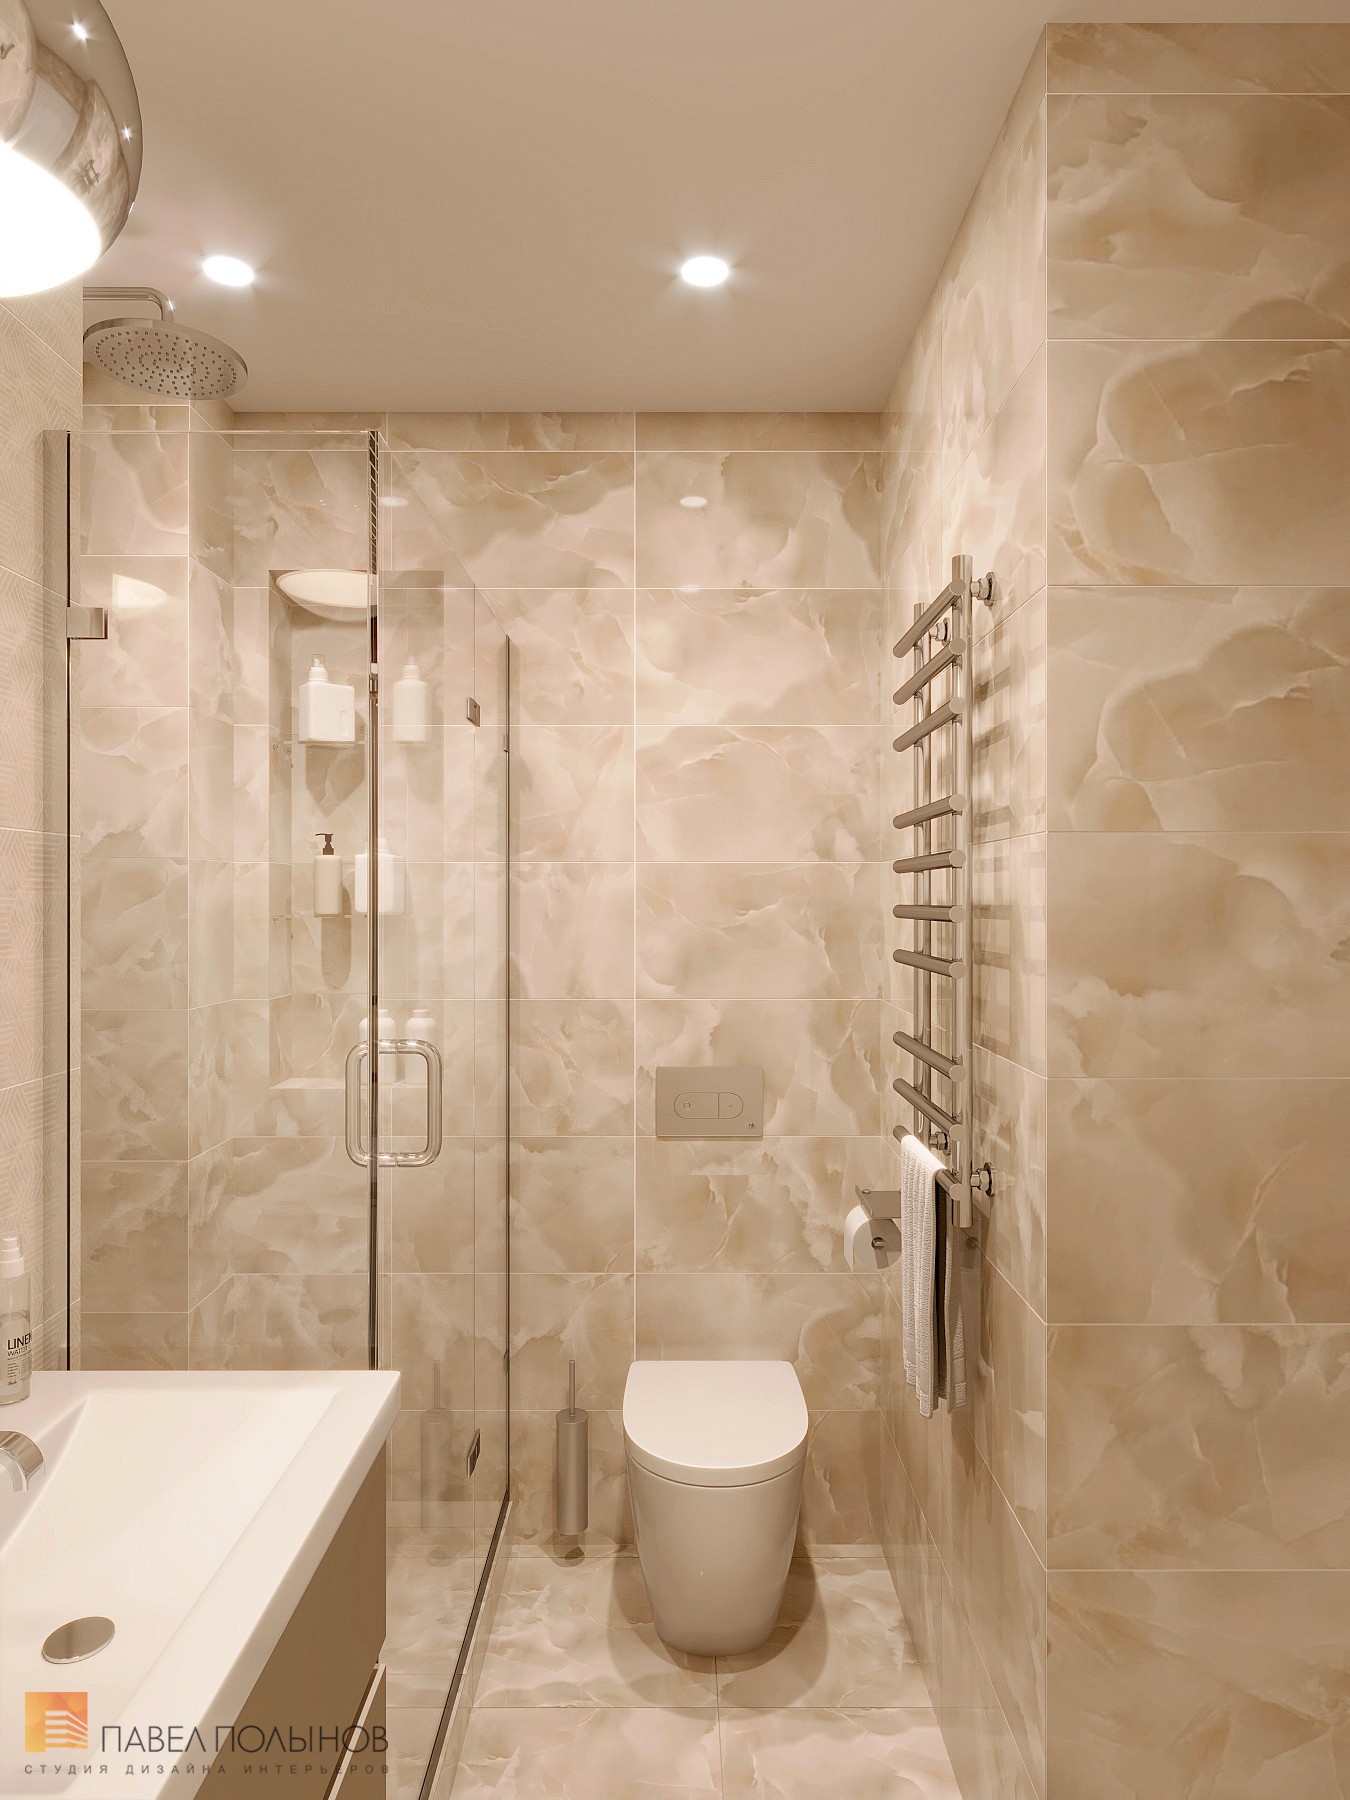 Фото дизайн ванной комнаты из проекта «Интерьер квартиры 140 кв.м. в стиле неоклассики»